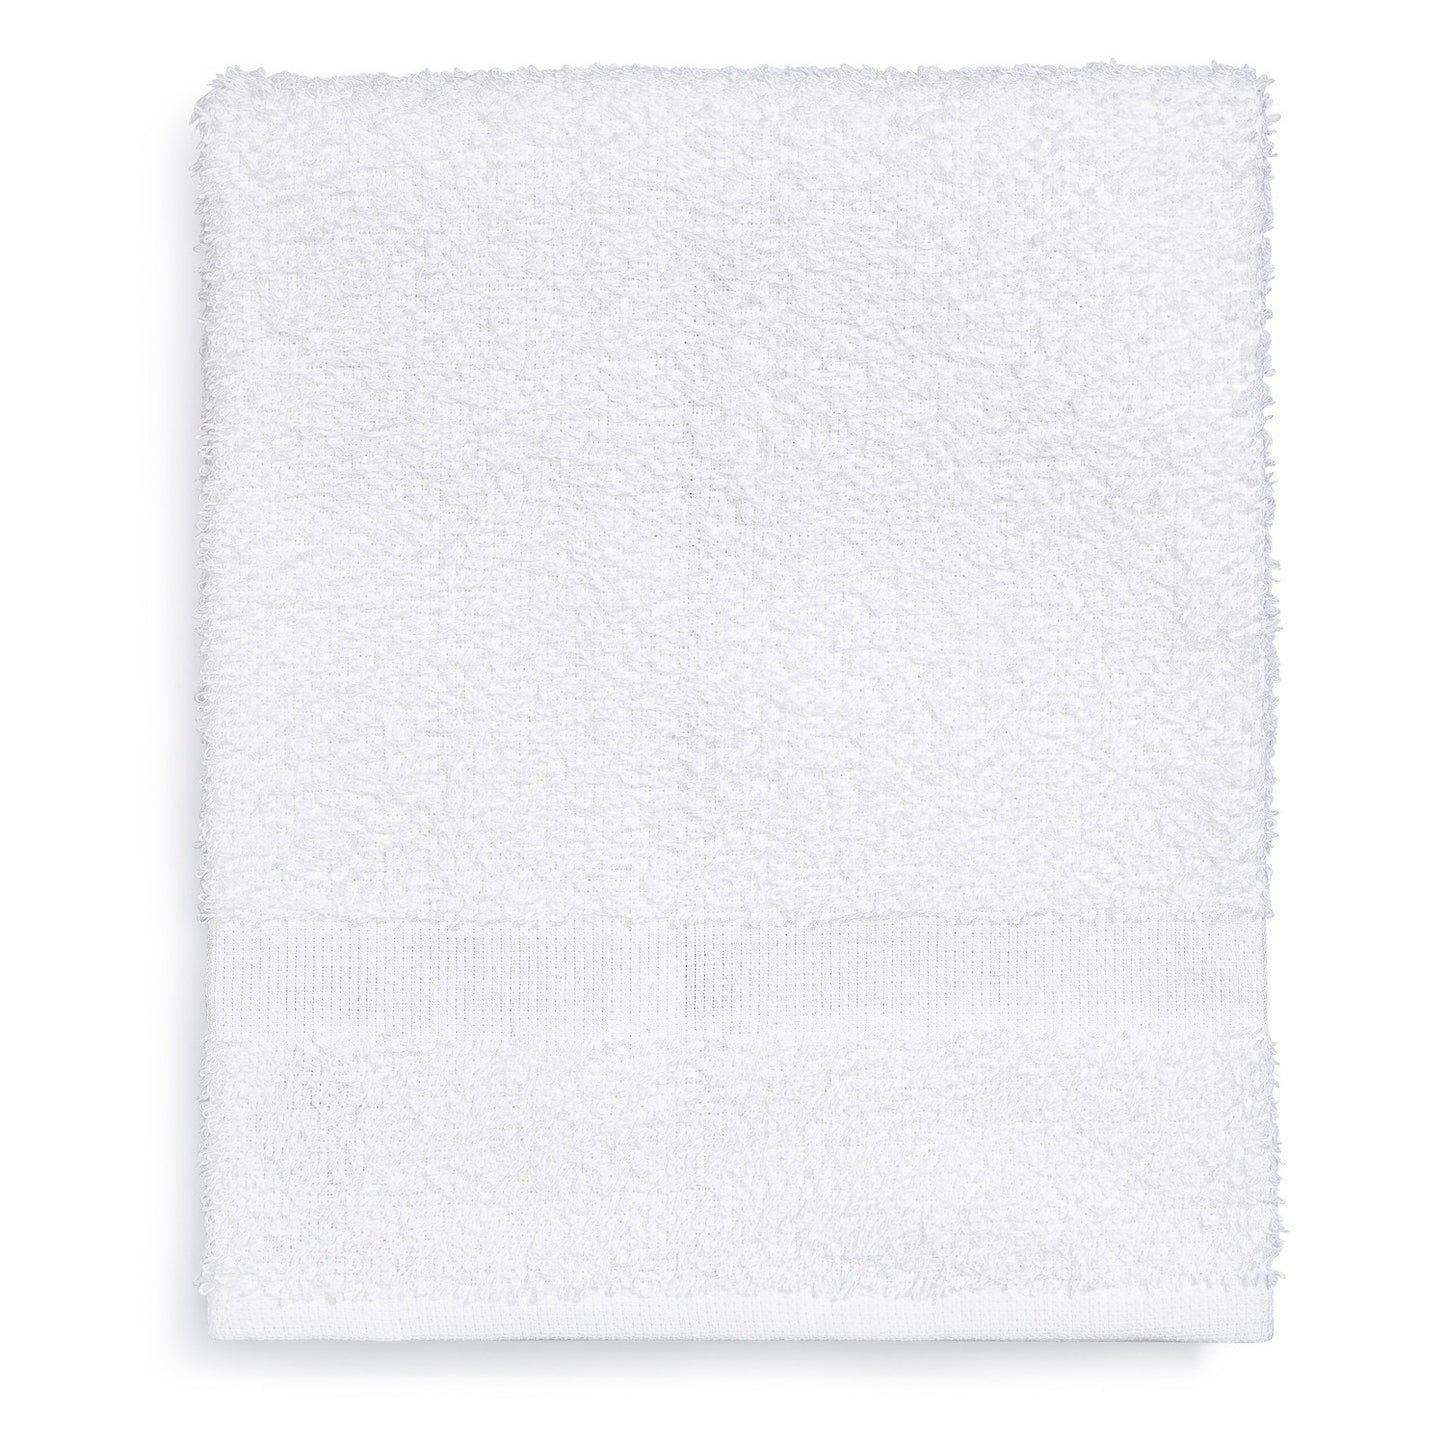 Economy Hand Towel, 16"x27"-3 LBS, 15 DZ/cs